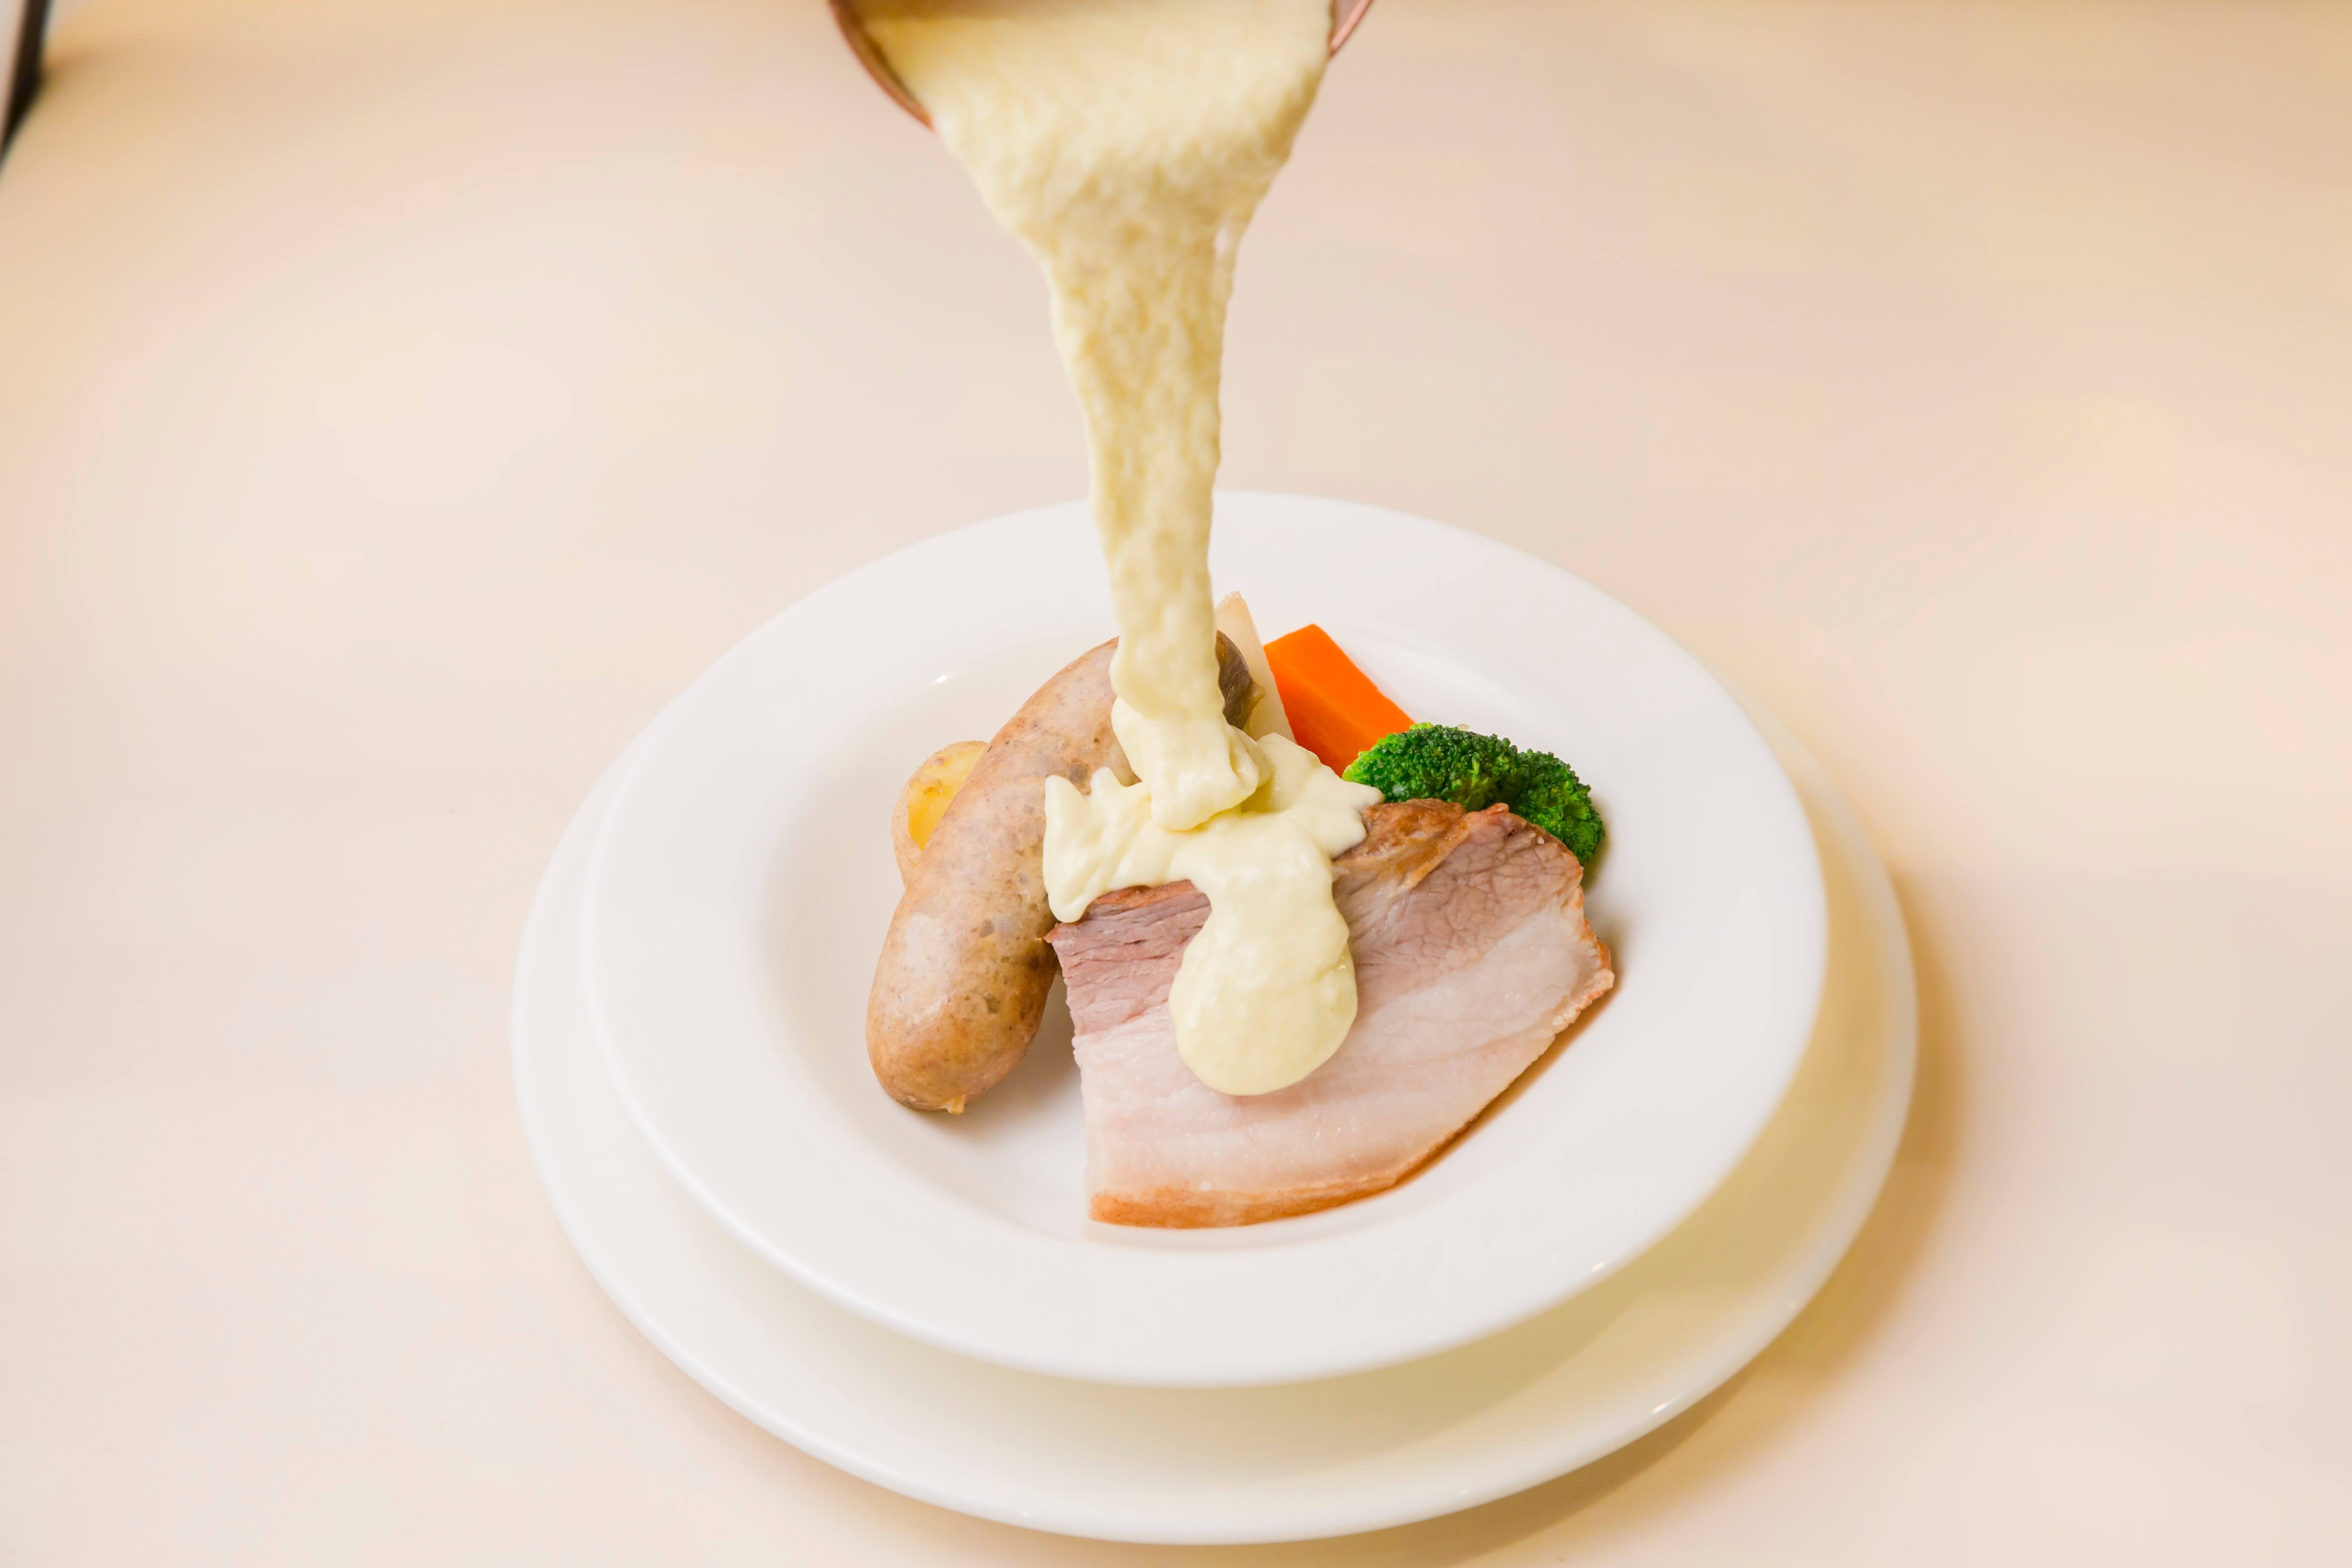 ギンザシックス Ginza six フレンチ French restaurant_cheese.【ビストロ オザミ】自家製ソーセージとジャガイモのとろとろラクレットチーズがけ